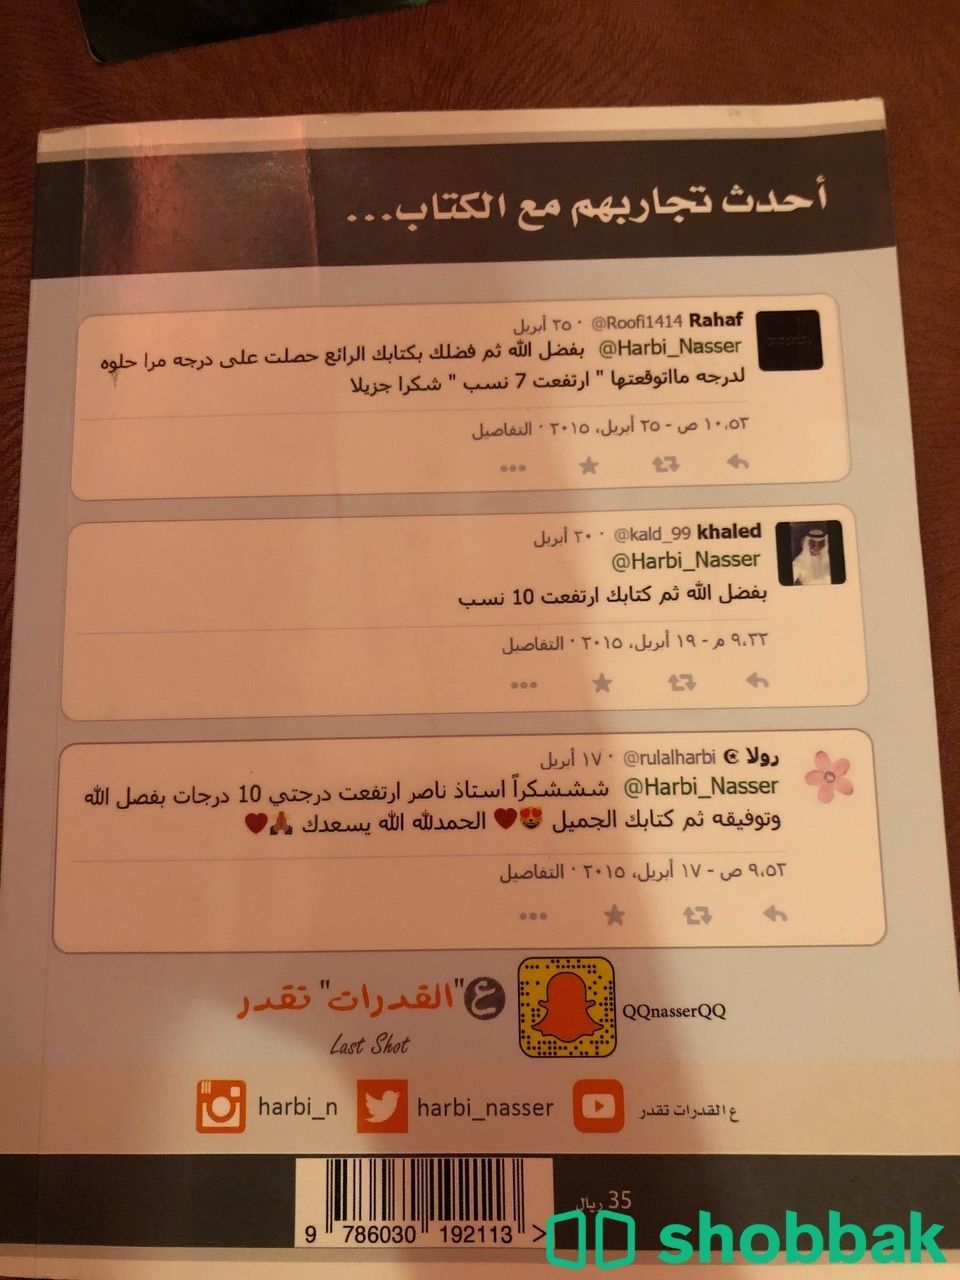 مجموعة كتب للقدرات Shobbak Saudi Arabia